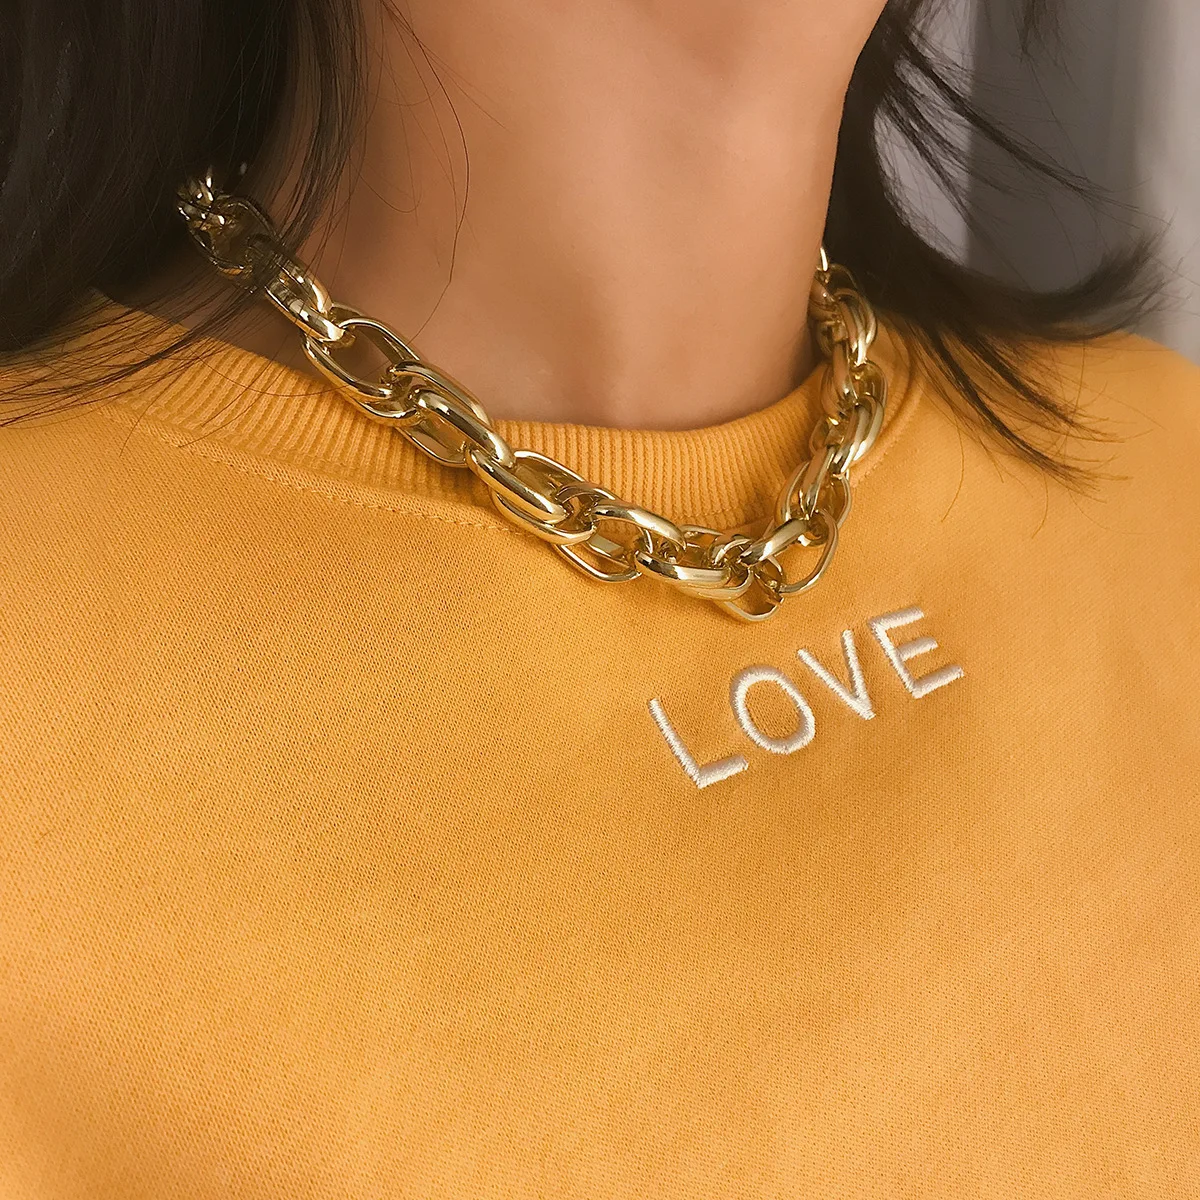 KingDeng ожерелье-чокер женское модное ювелирное изделие панк ретро золотая цепь Готический алюминий хип-хоп подарки скрученные персонализированные Вечерние